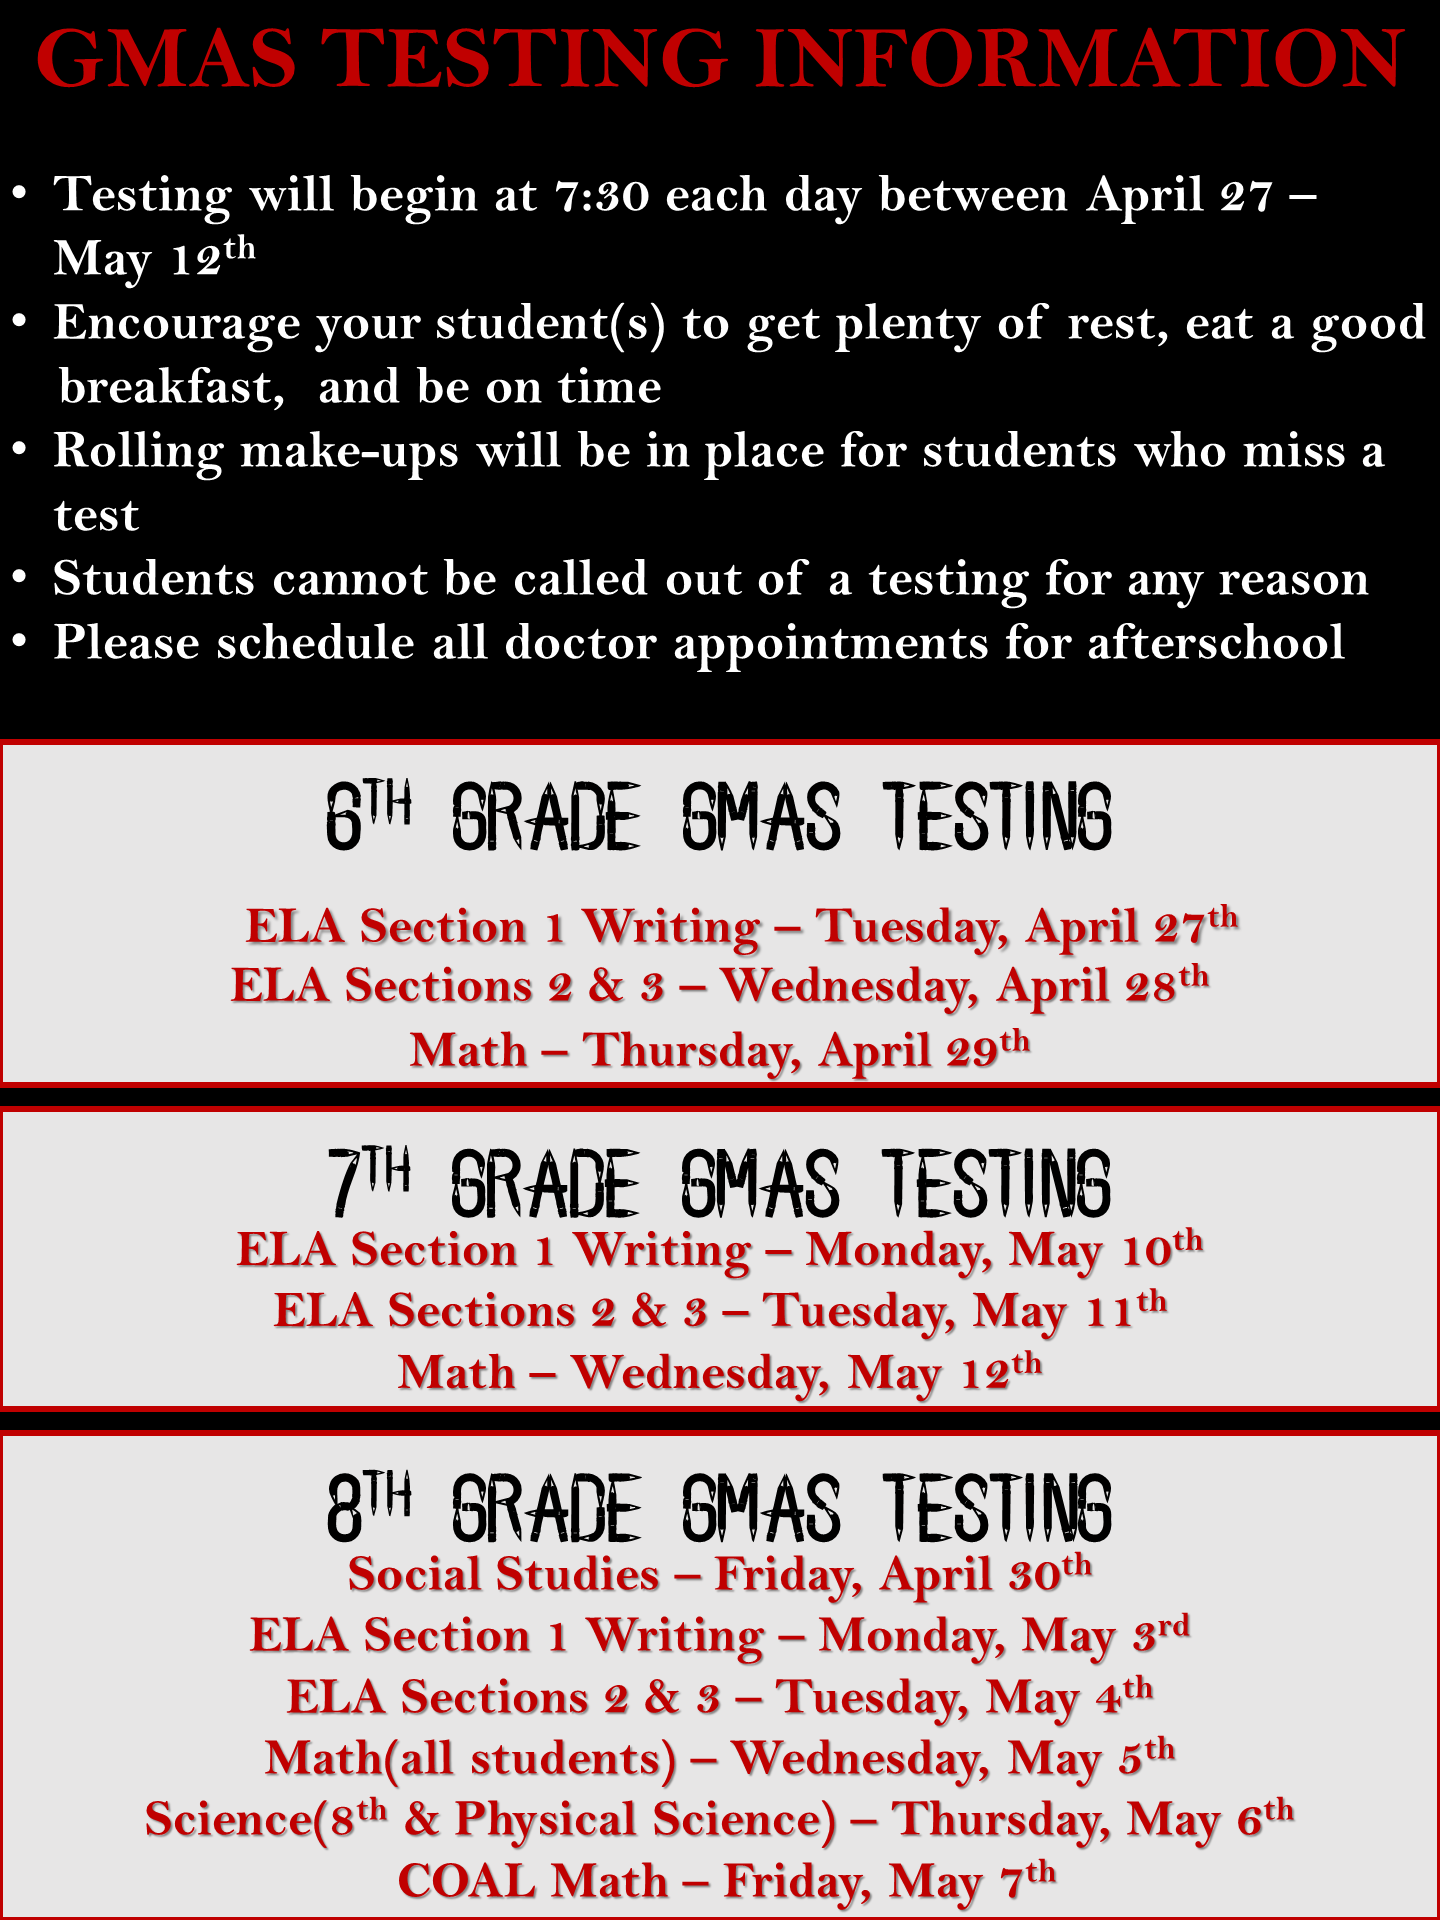 GMAS Testing Information 